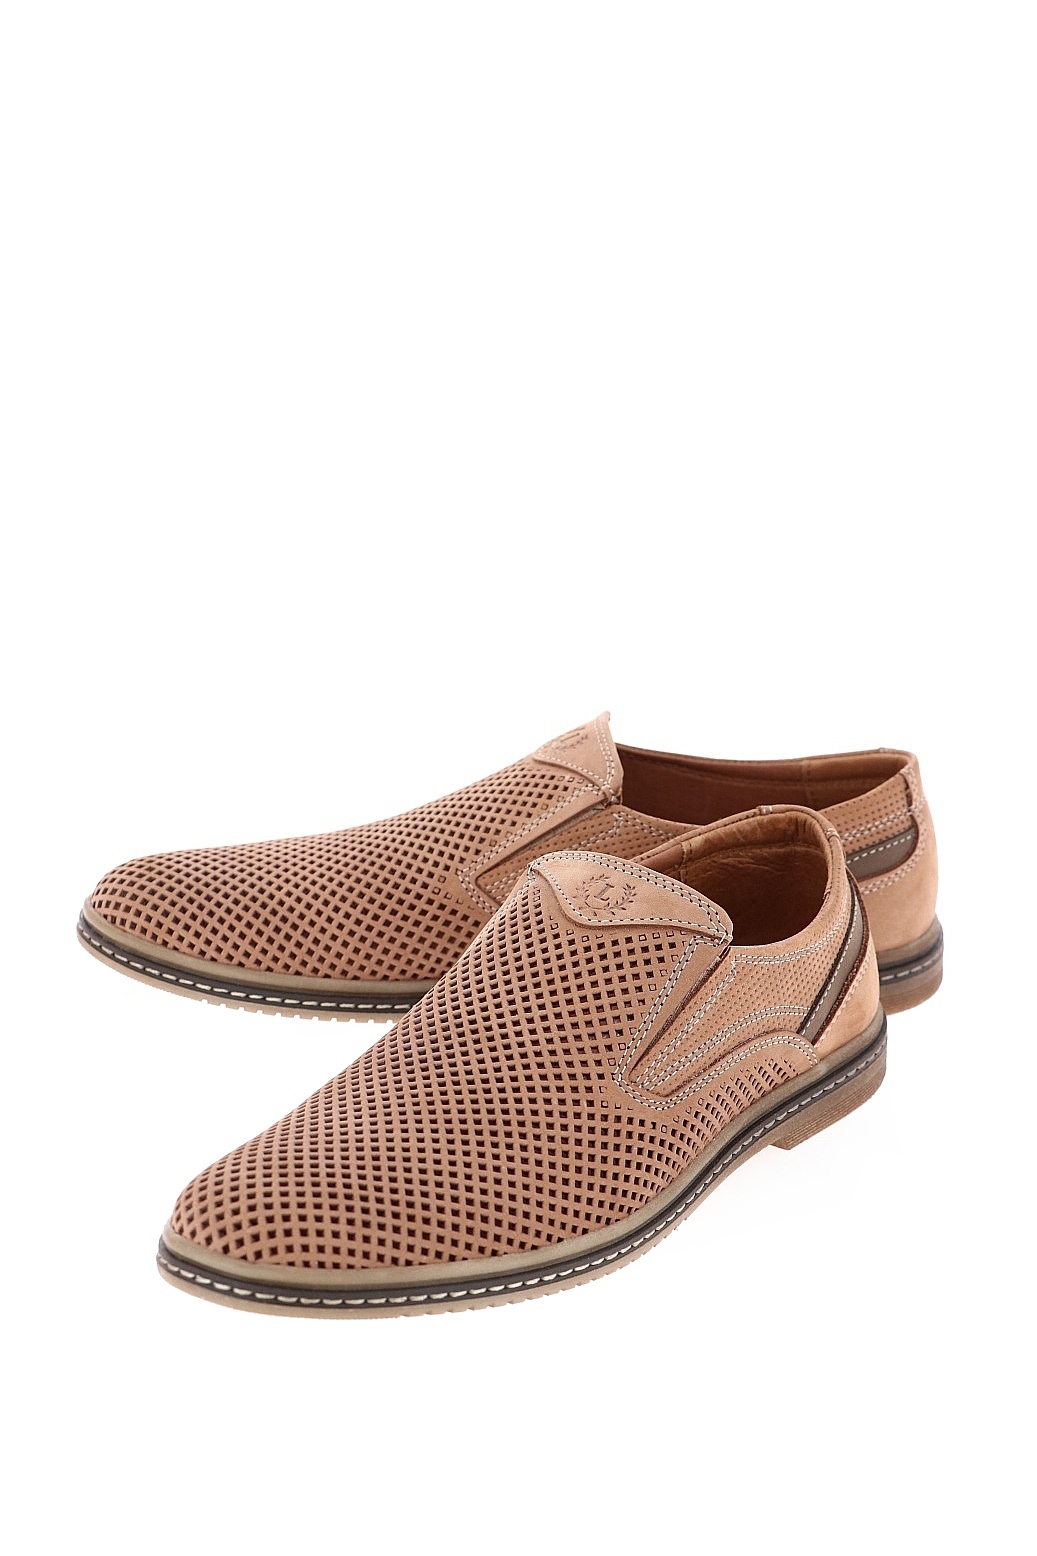 Туфли мужские Baden WL065-011 коричневые 42 RU